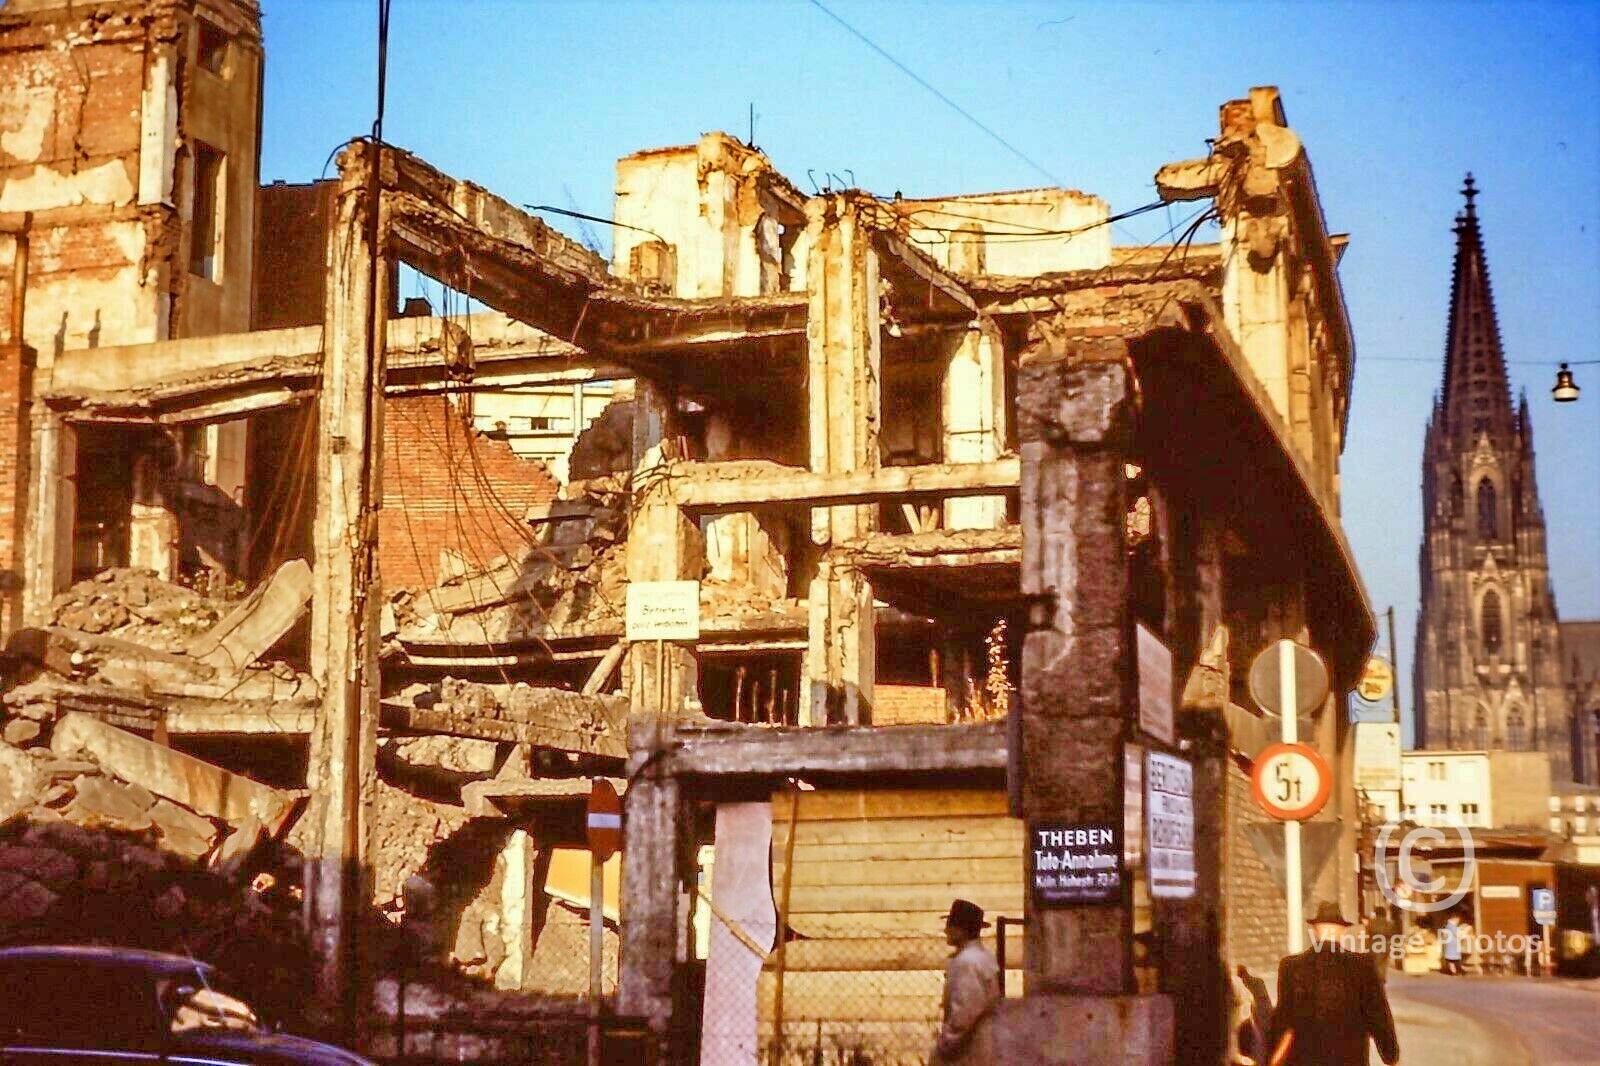 1953 Cologne Bombing Ruins Street Scene